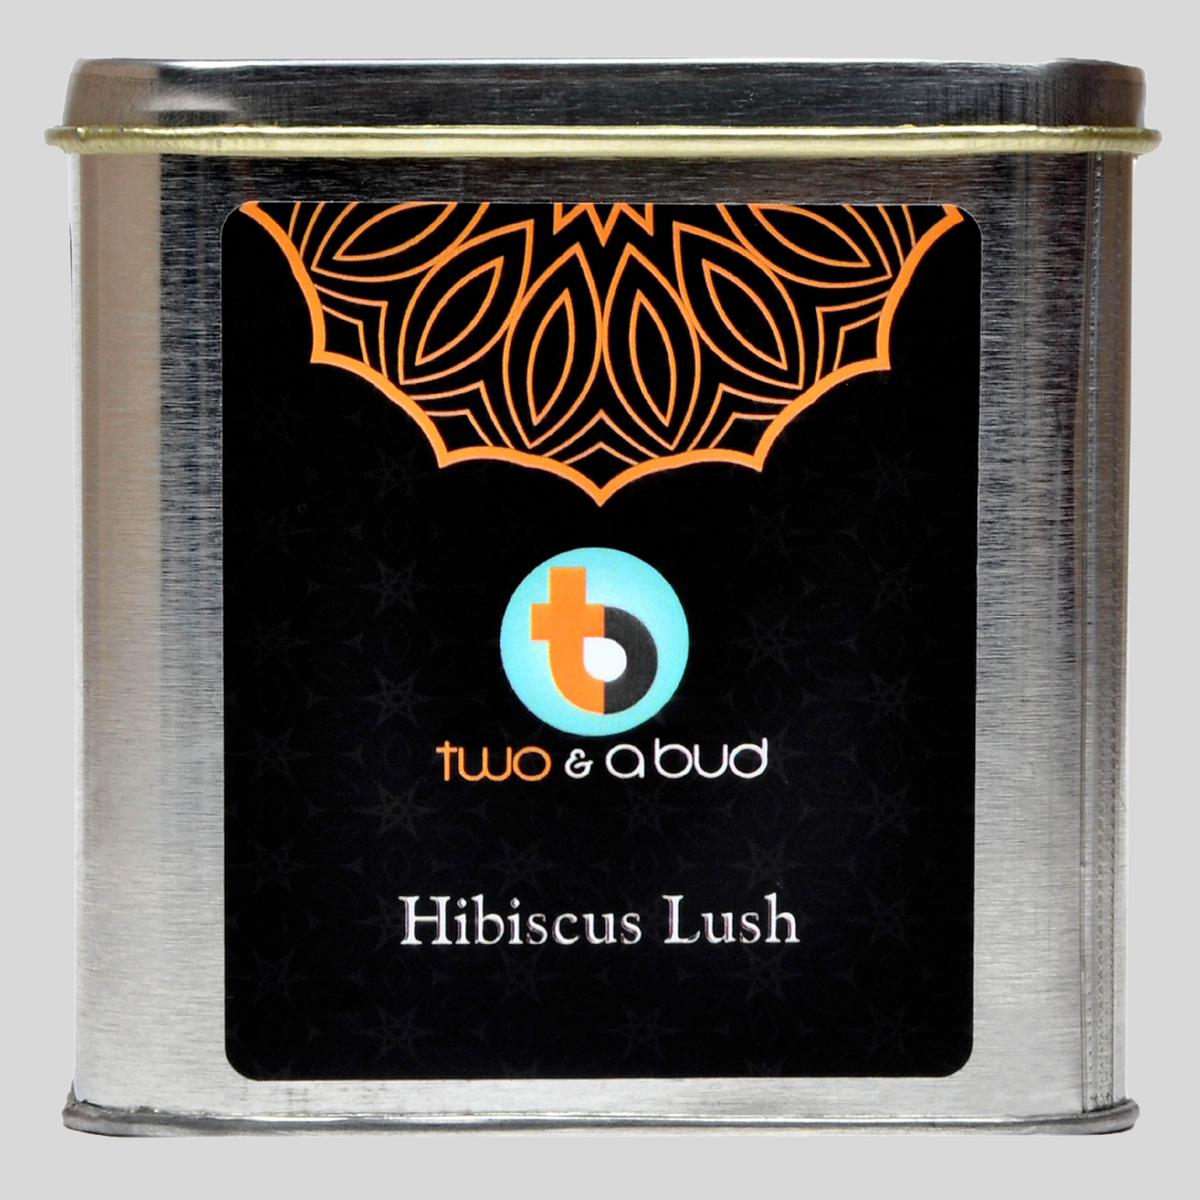 Hibiscus lush Black Tea